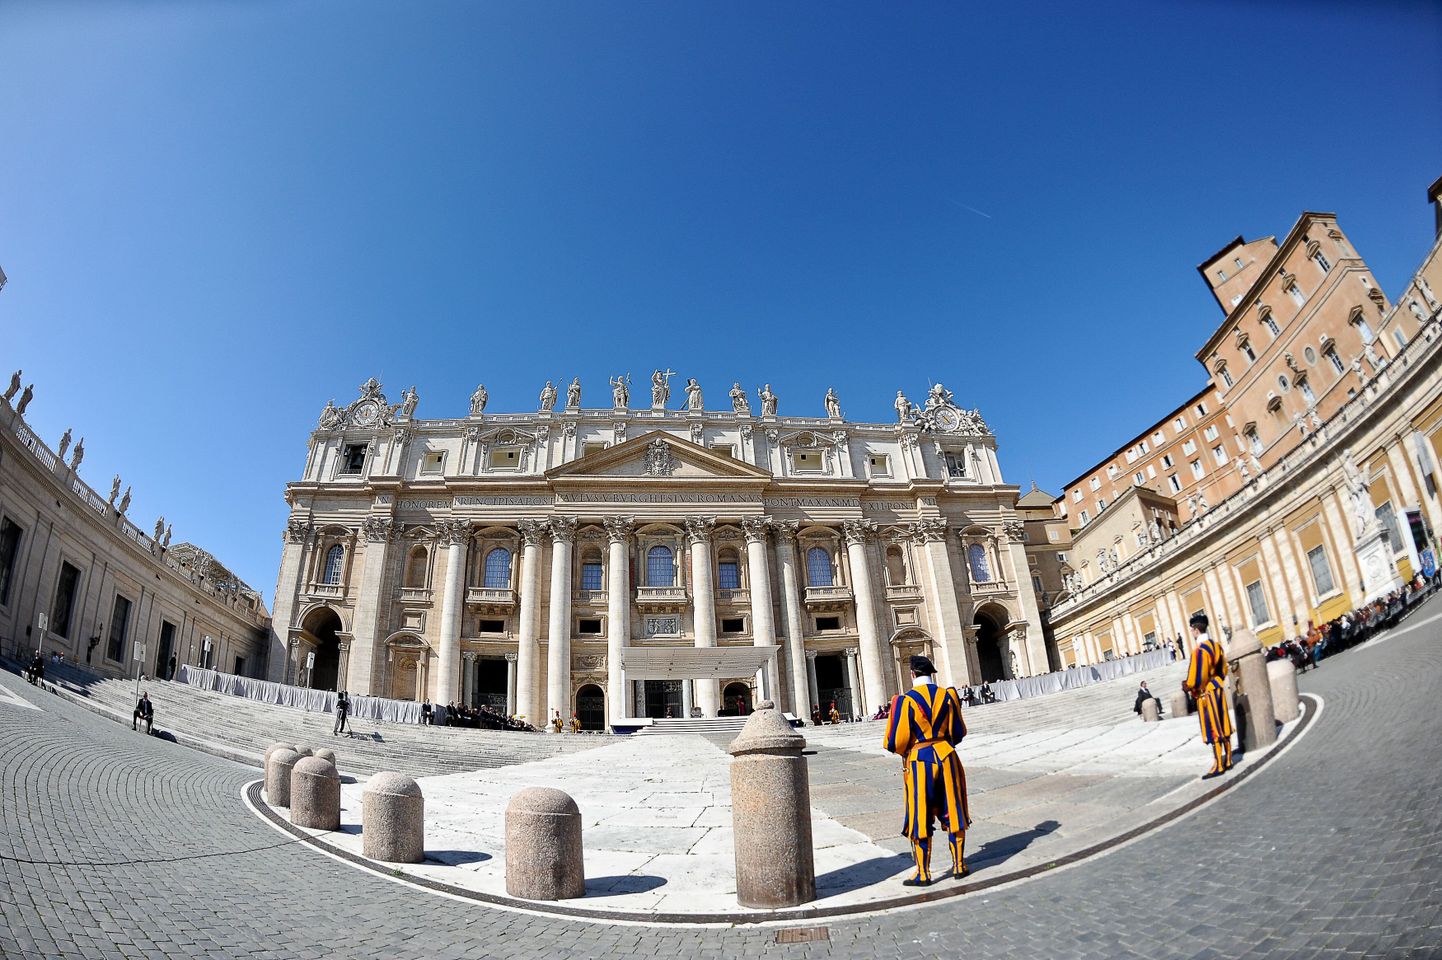 USA on maininud Vatikani võimaliku rahapesukohana.